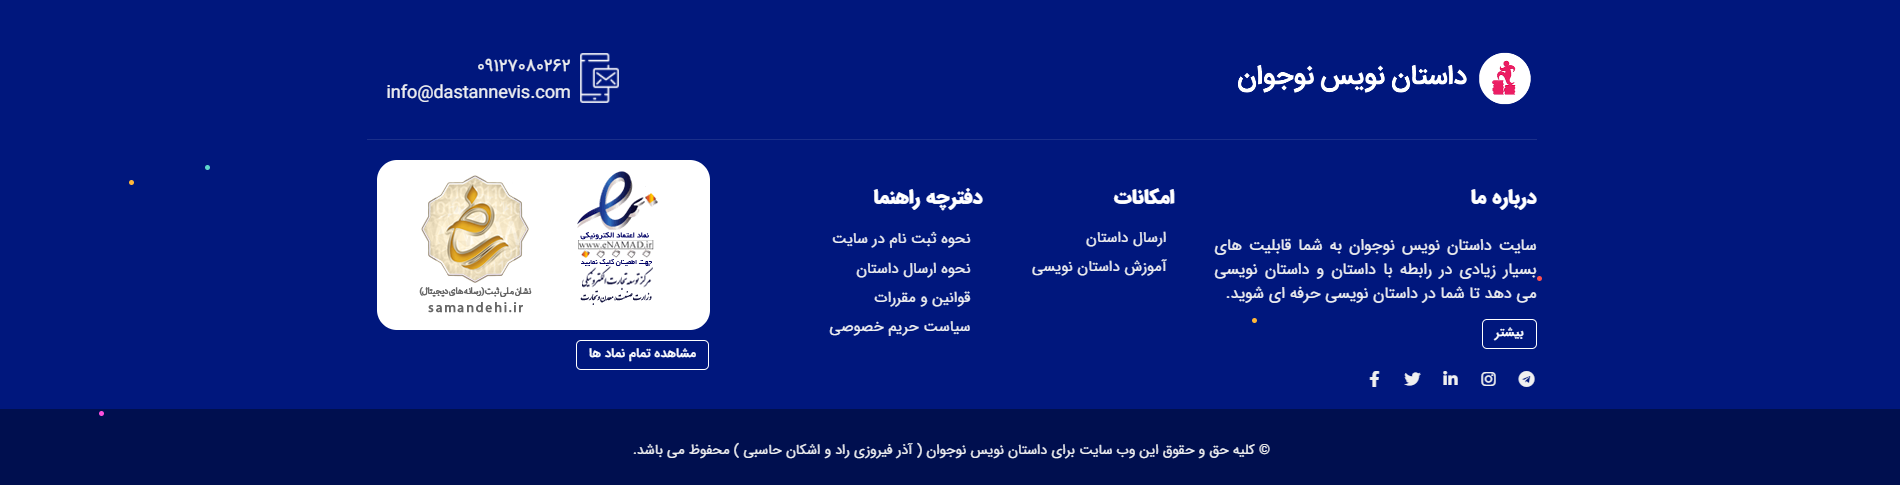 فوتر وبسایت محتوا و آموزشی داستان نویس نوجوان خرداد ۱۴۰۰